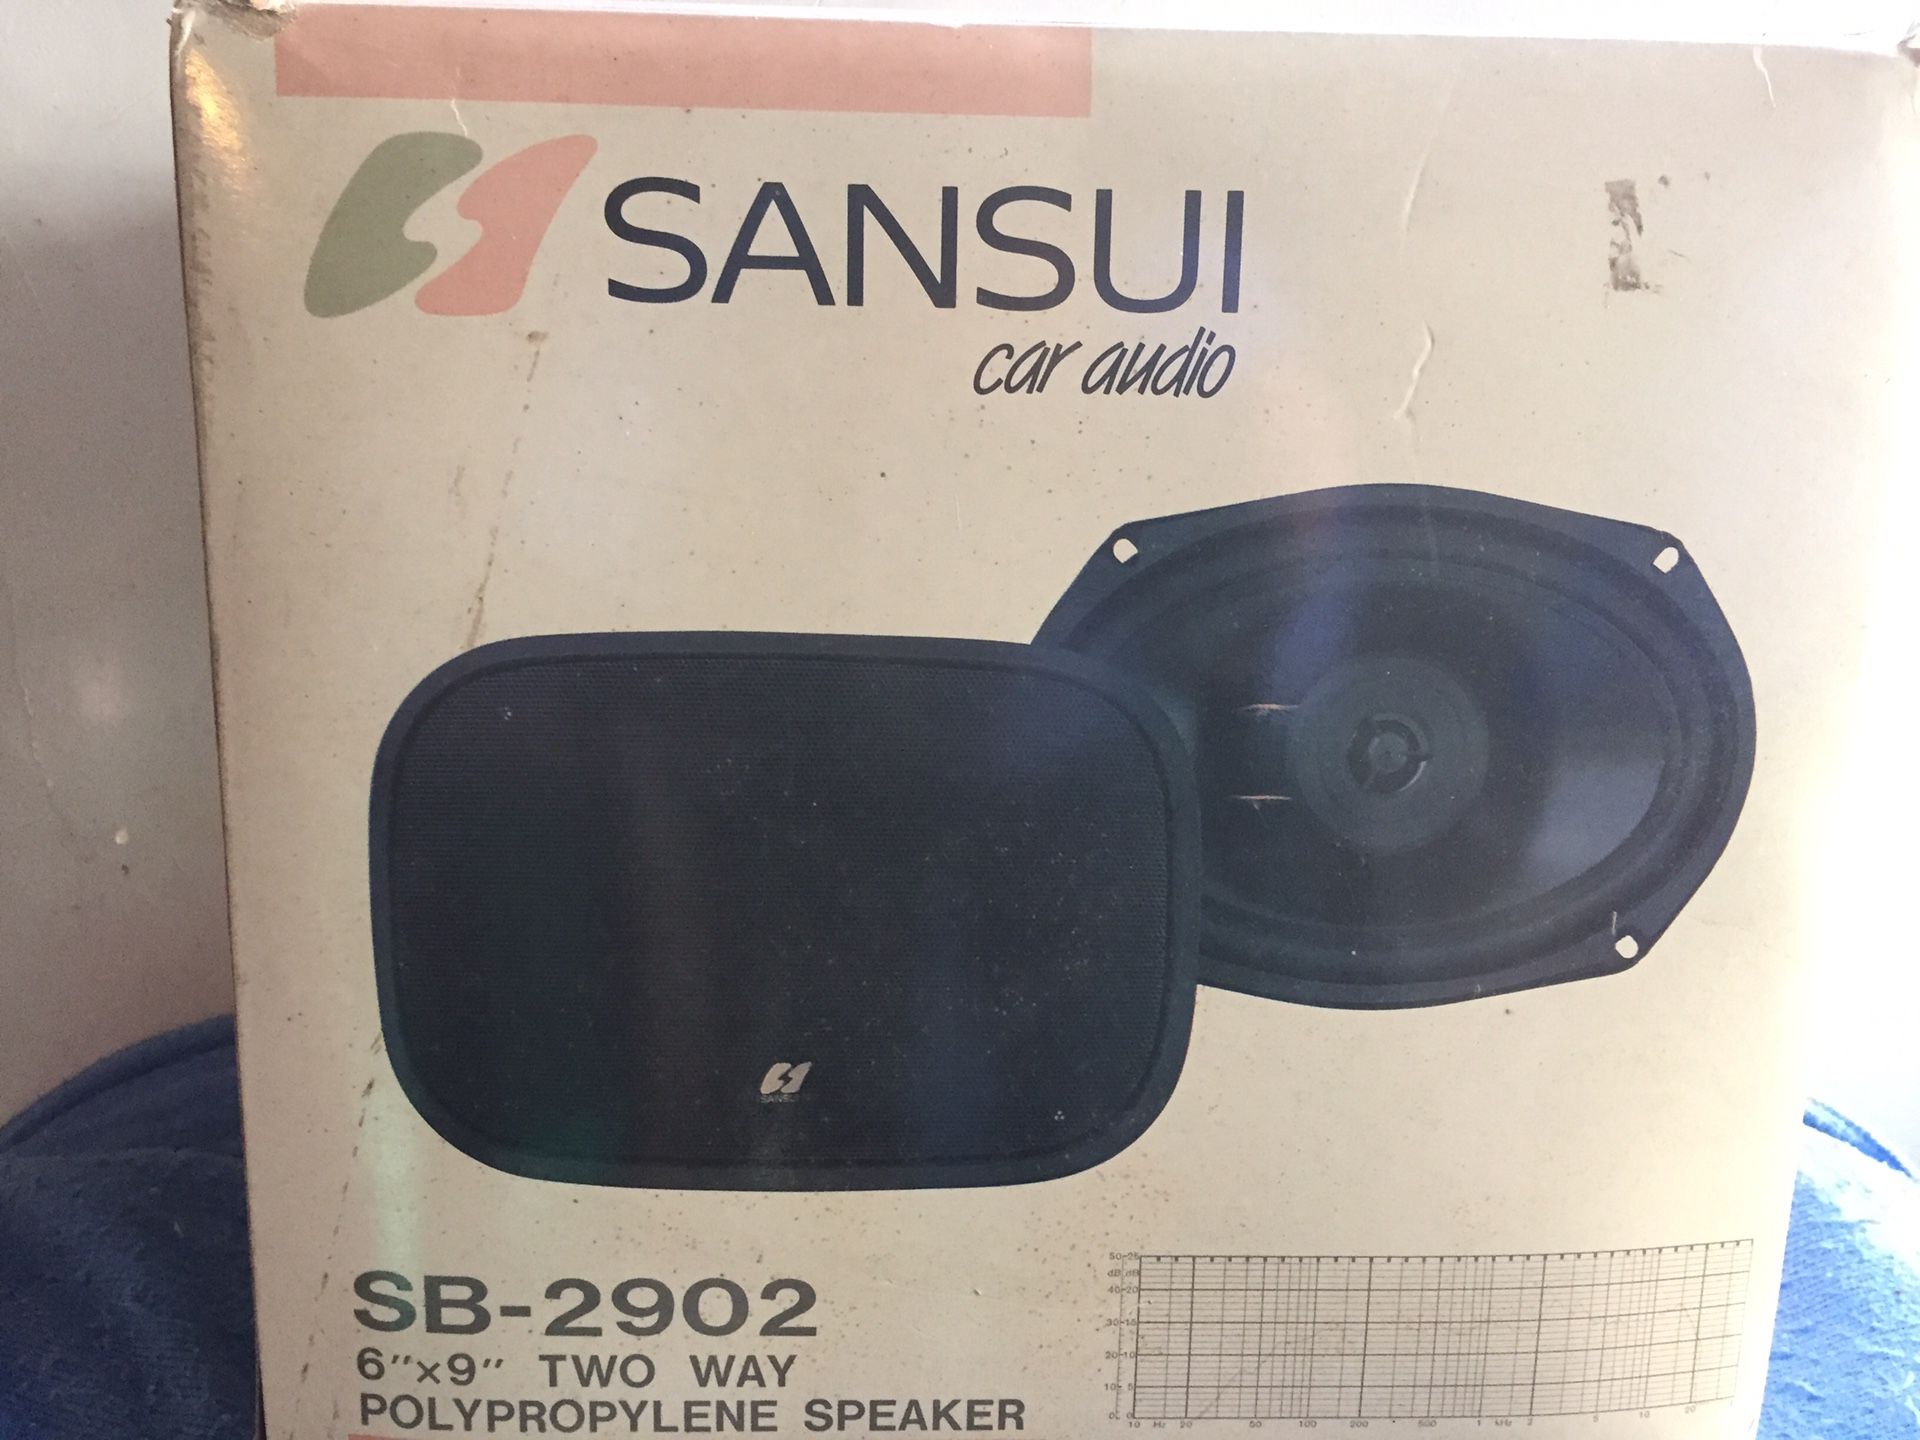 Sansui car audio speakers